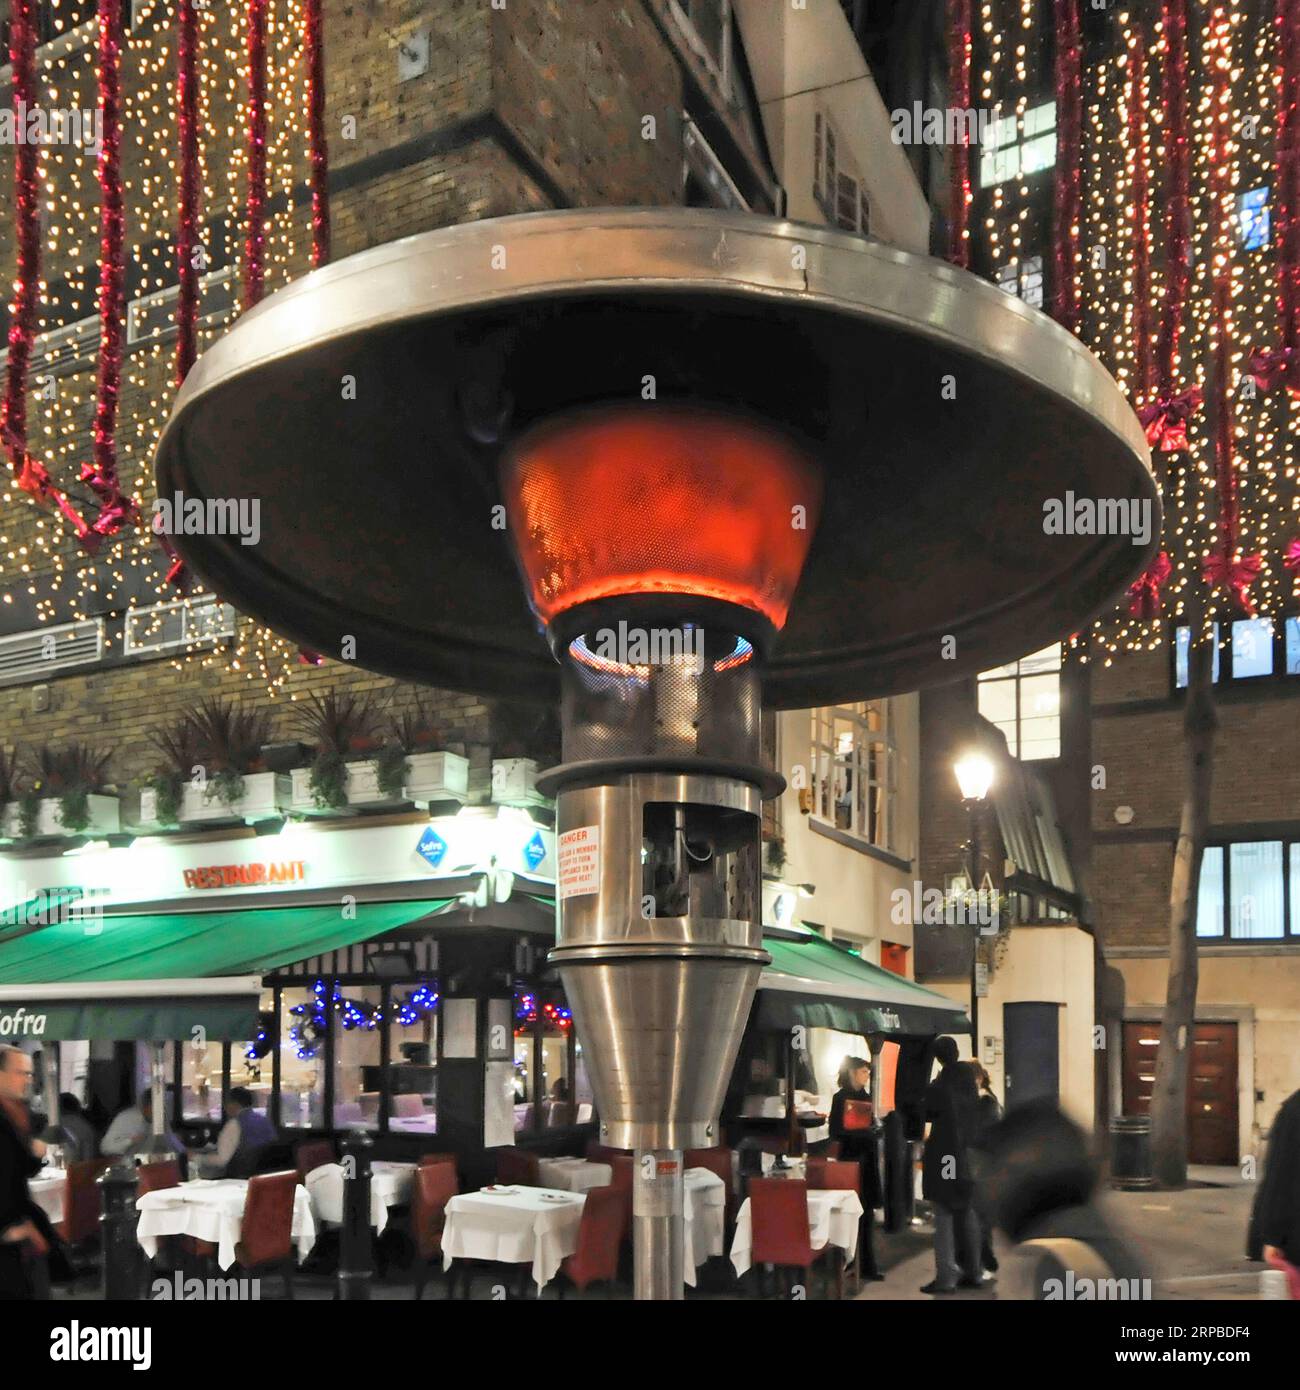 Fermer l'élément chauffant du chauffage extérieur Calor Gas à côté des tables de restaurant à Noël à St Christophers place West End Londres Angleterre Royaume-Uni Banque D'Images